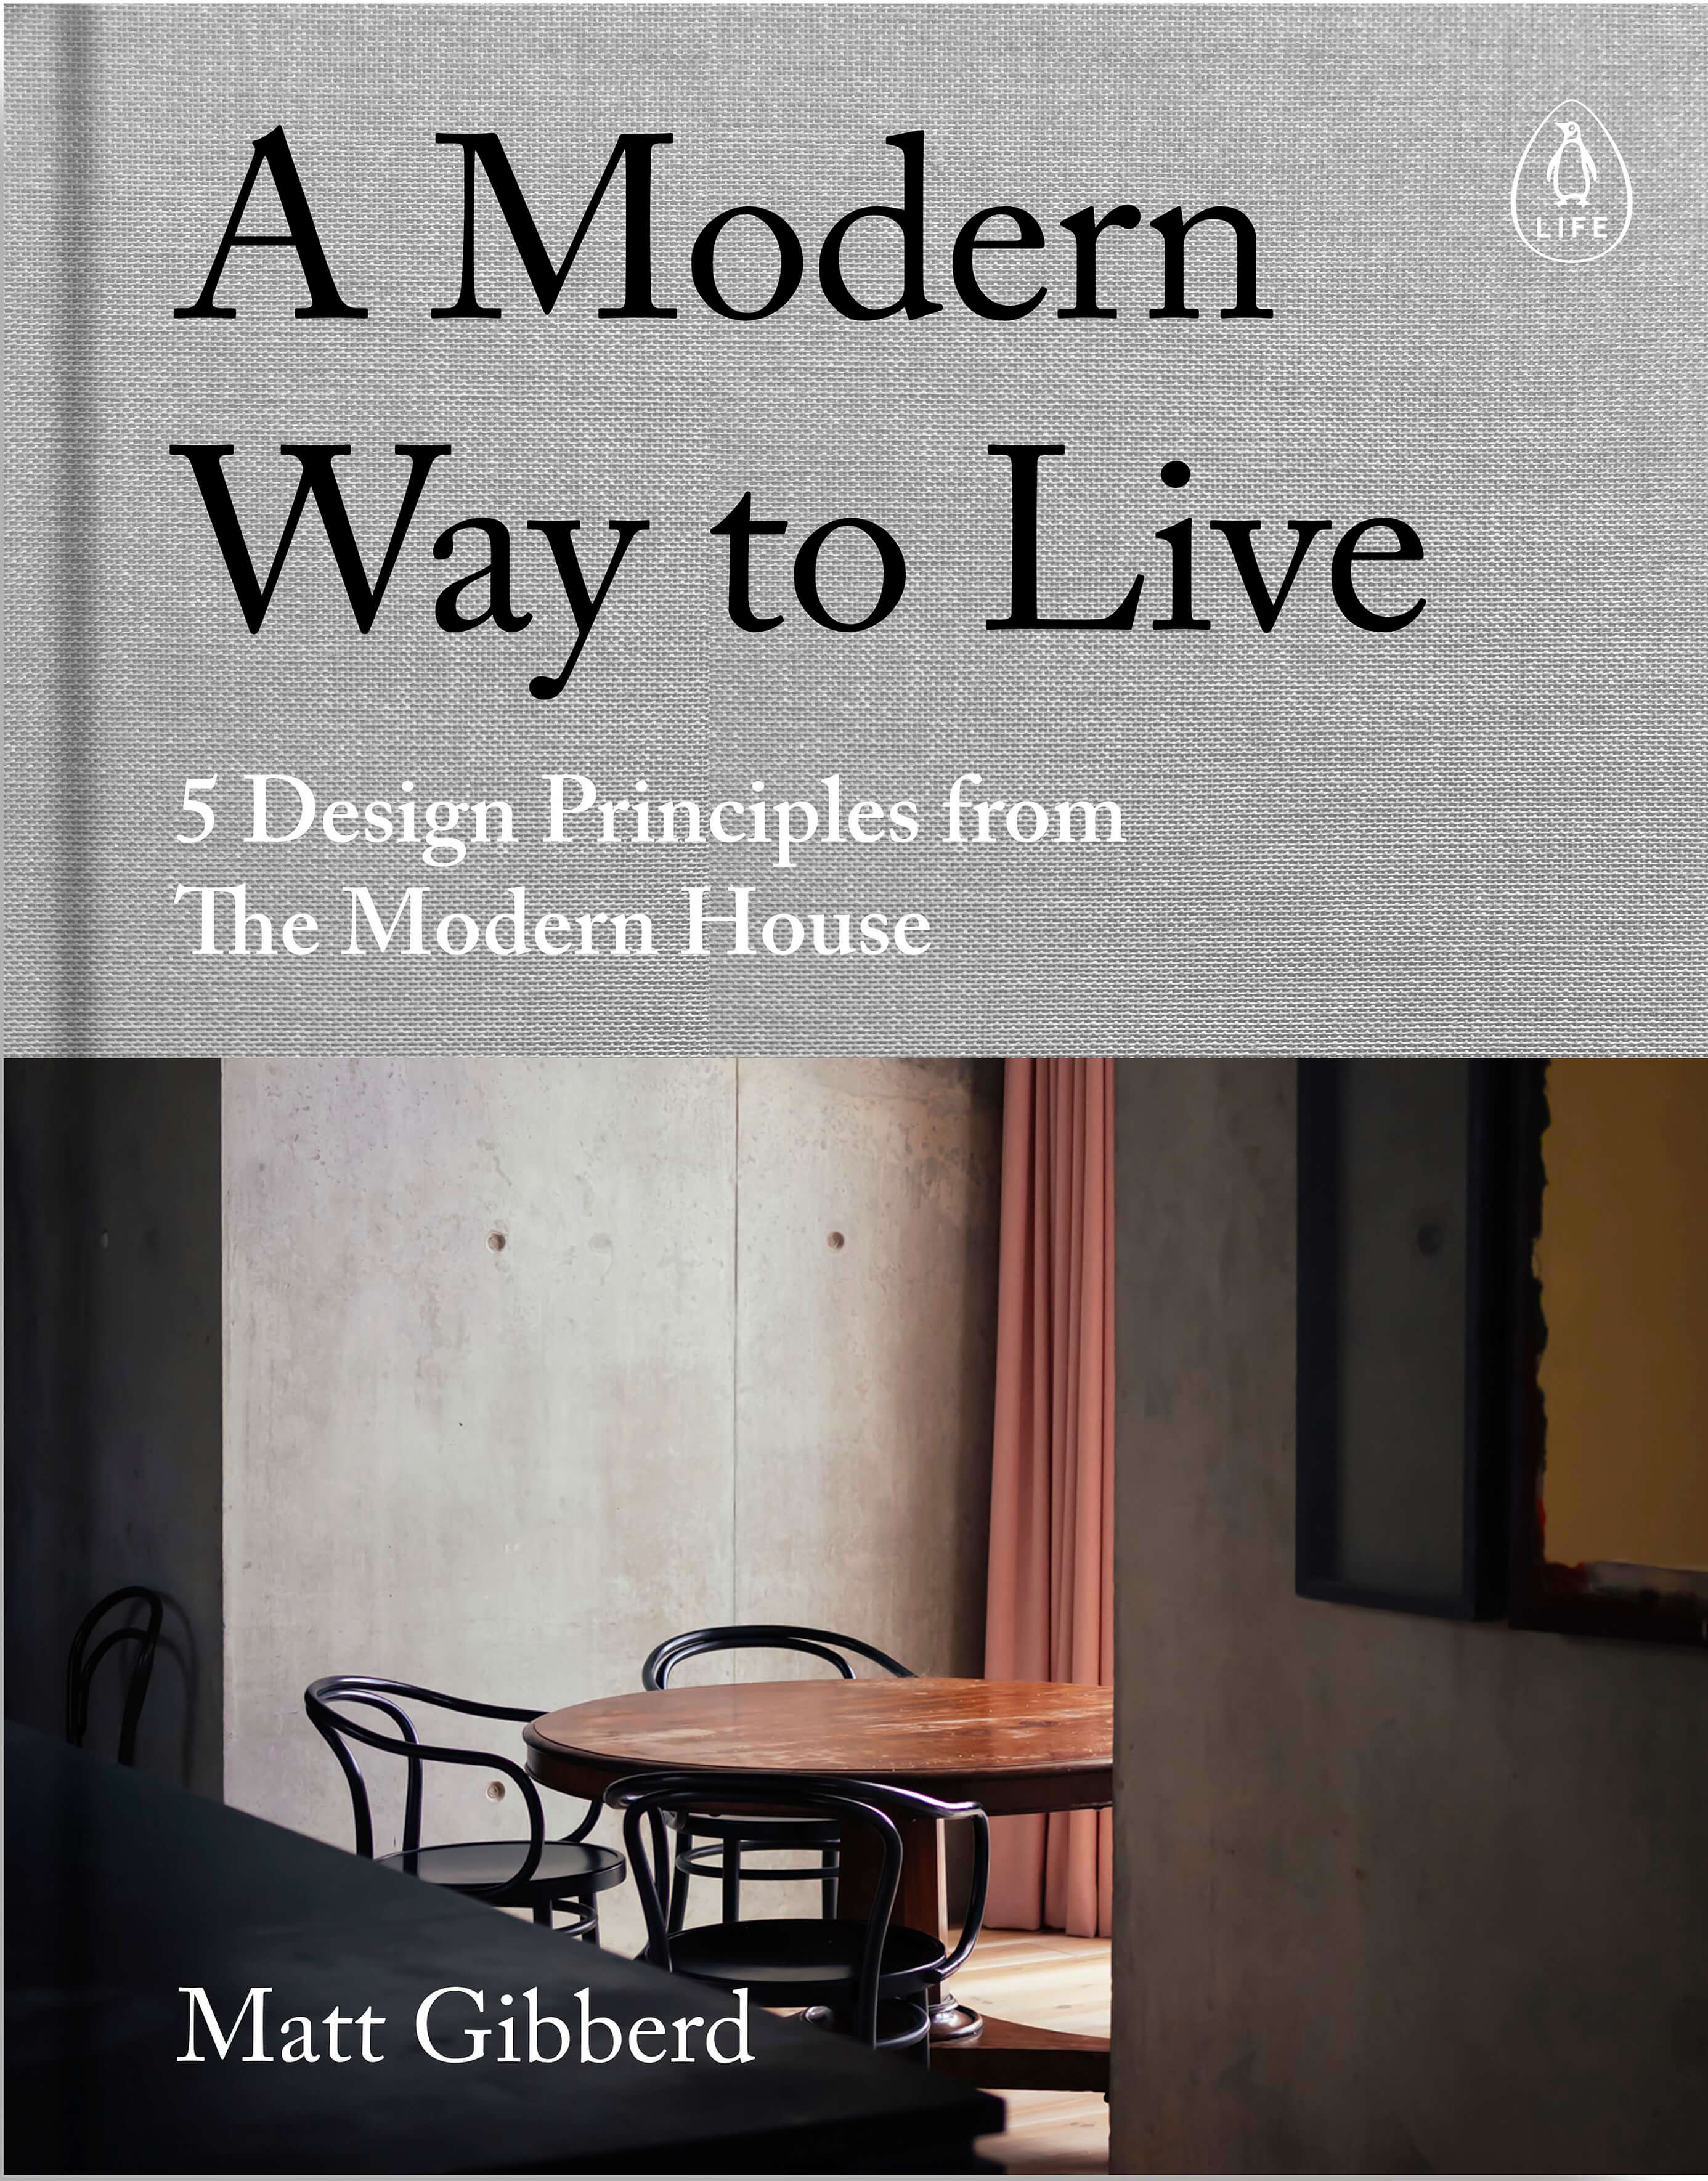 Modern Way To Live | Book | by Matt Gibberd - Lifestory - Bookspeed